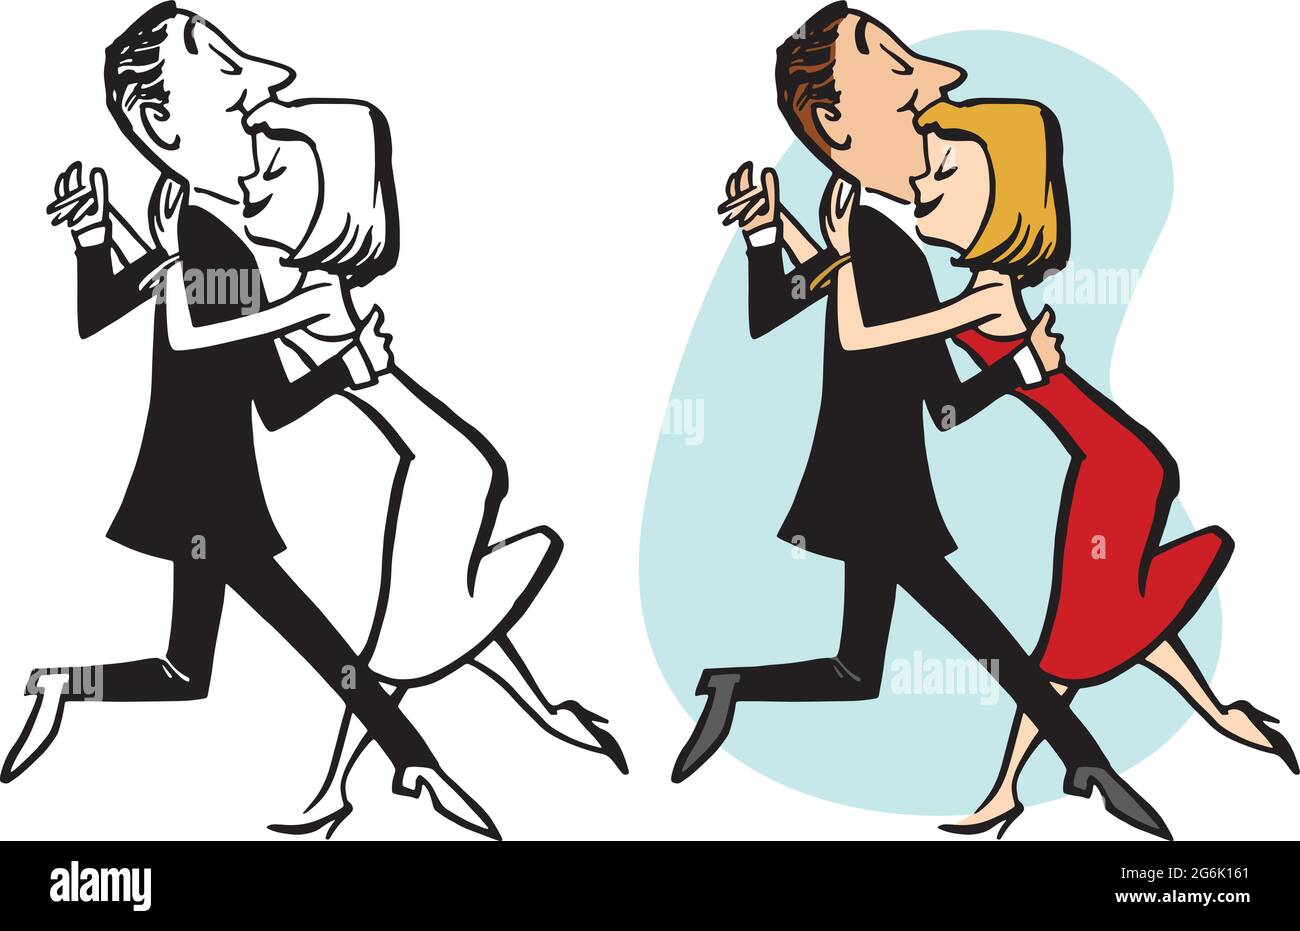 Un cartoon retrò d'epoca di una coppia che esegue una danza lenta. Illustrazione Vettoriale